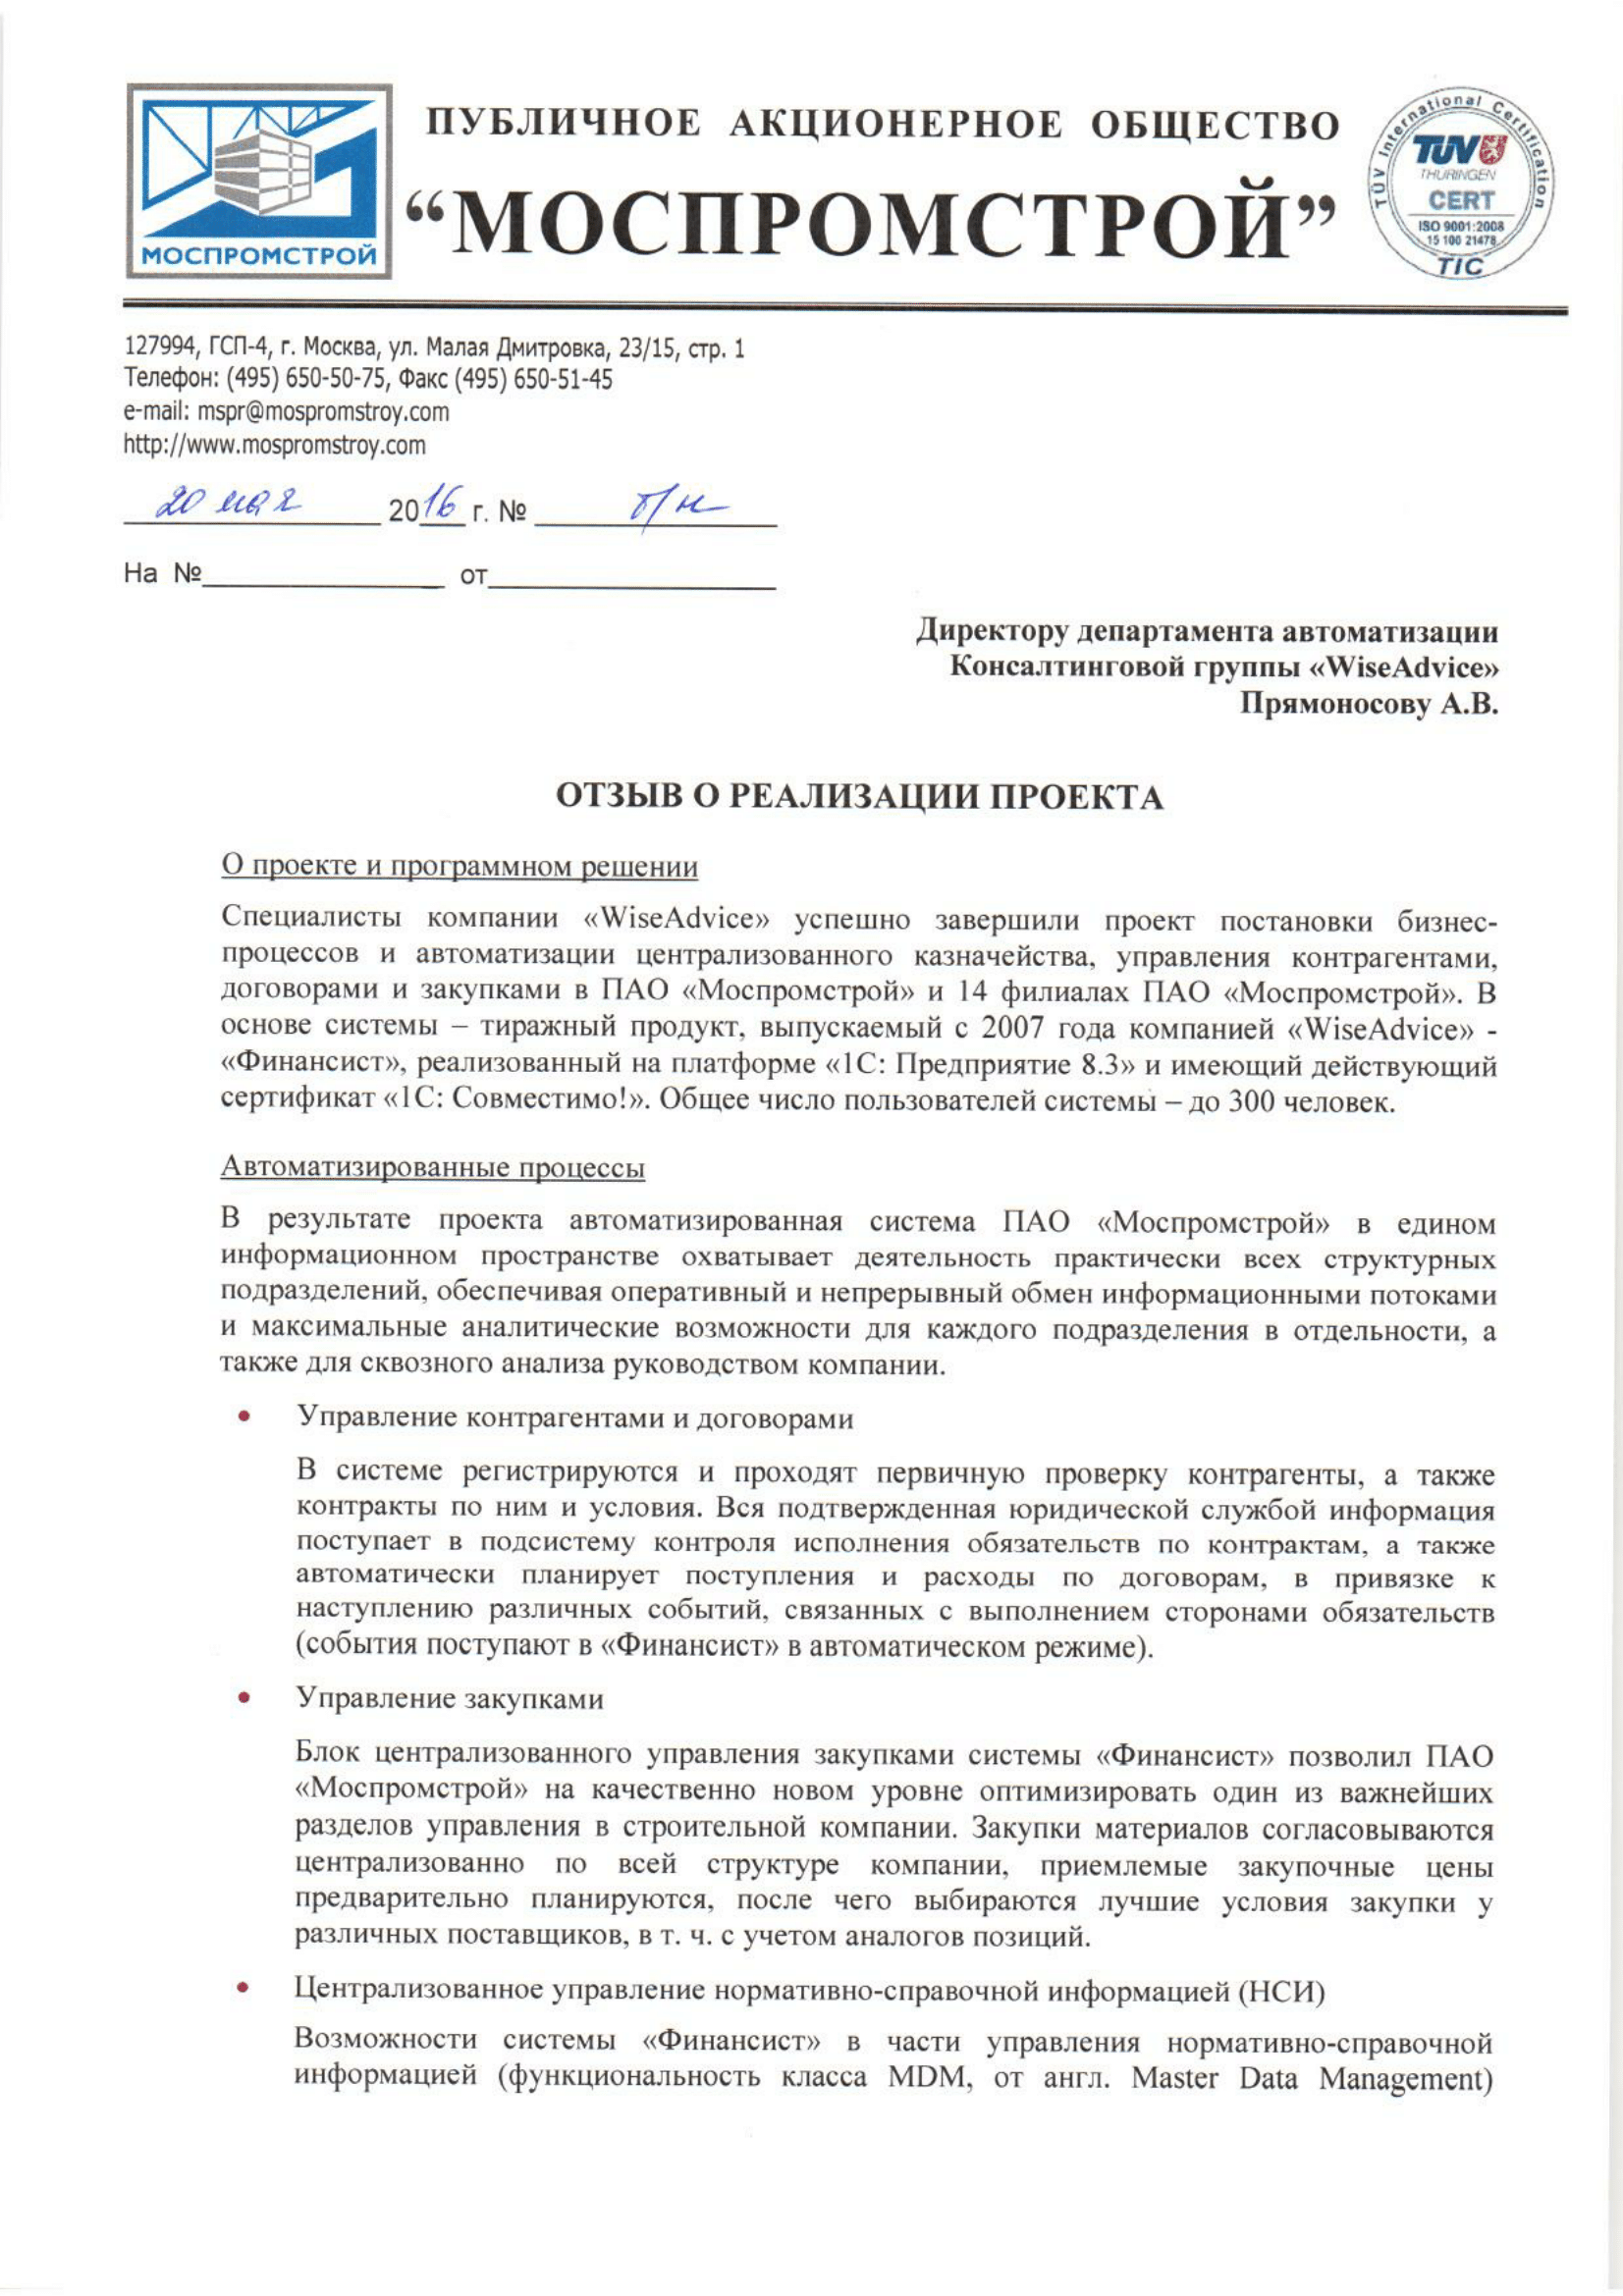 ПАО «Моспромстрой» отзыв